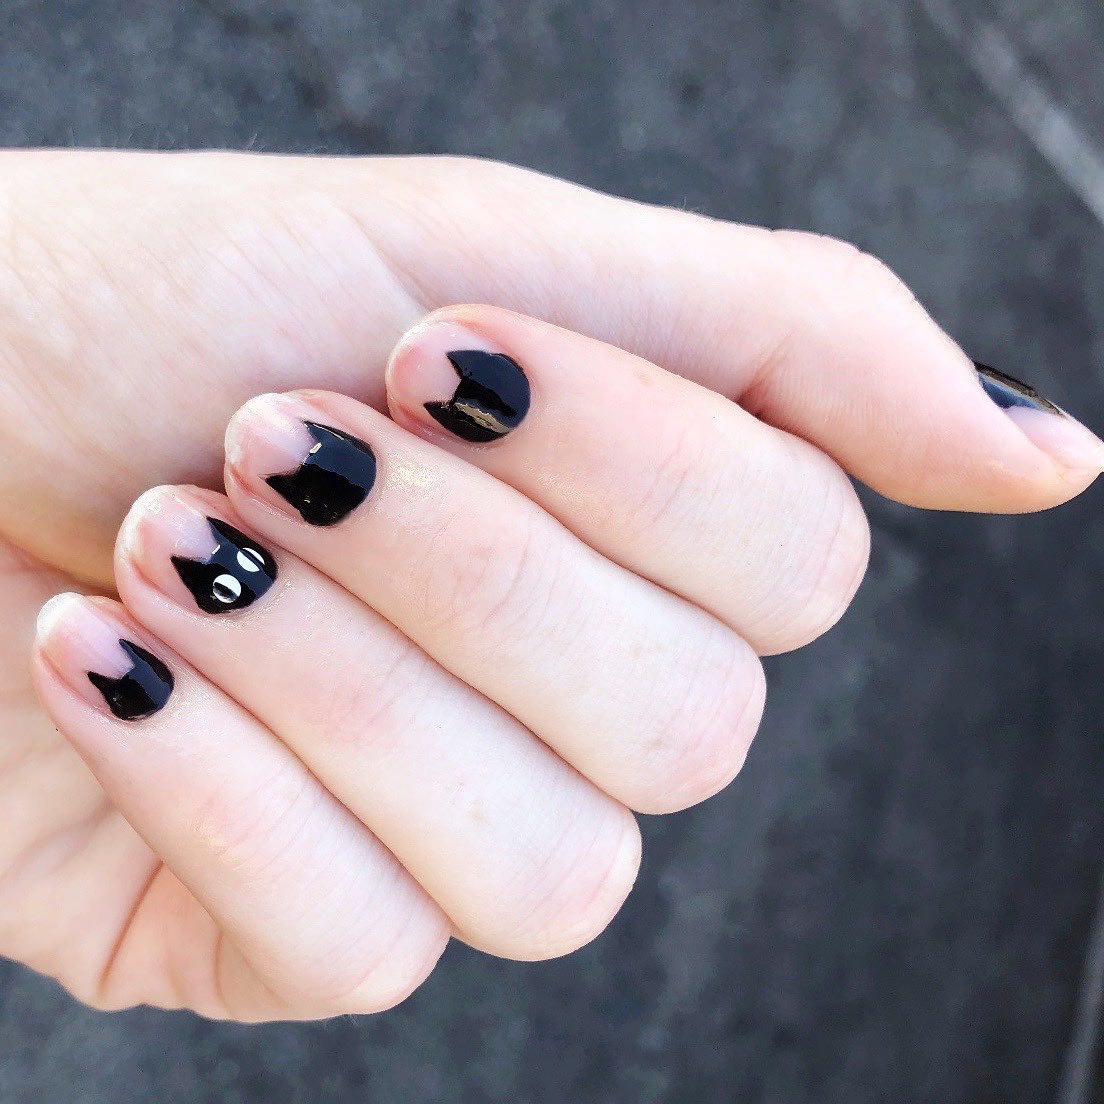 NailArt | White nail designs, Black nail designs, Black and white nail  designs